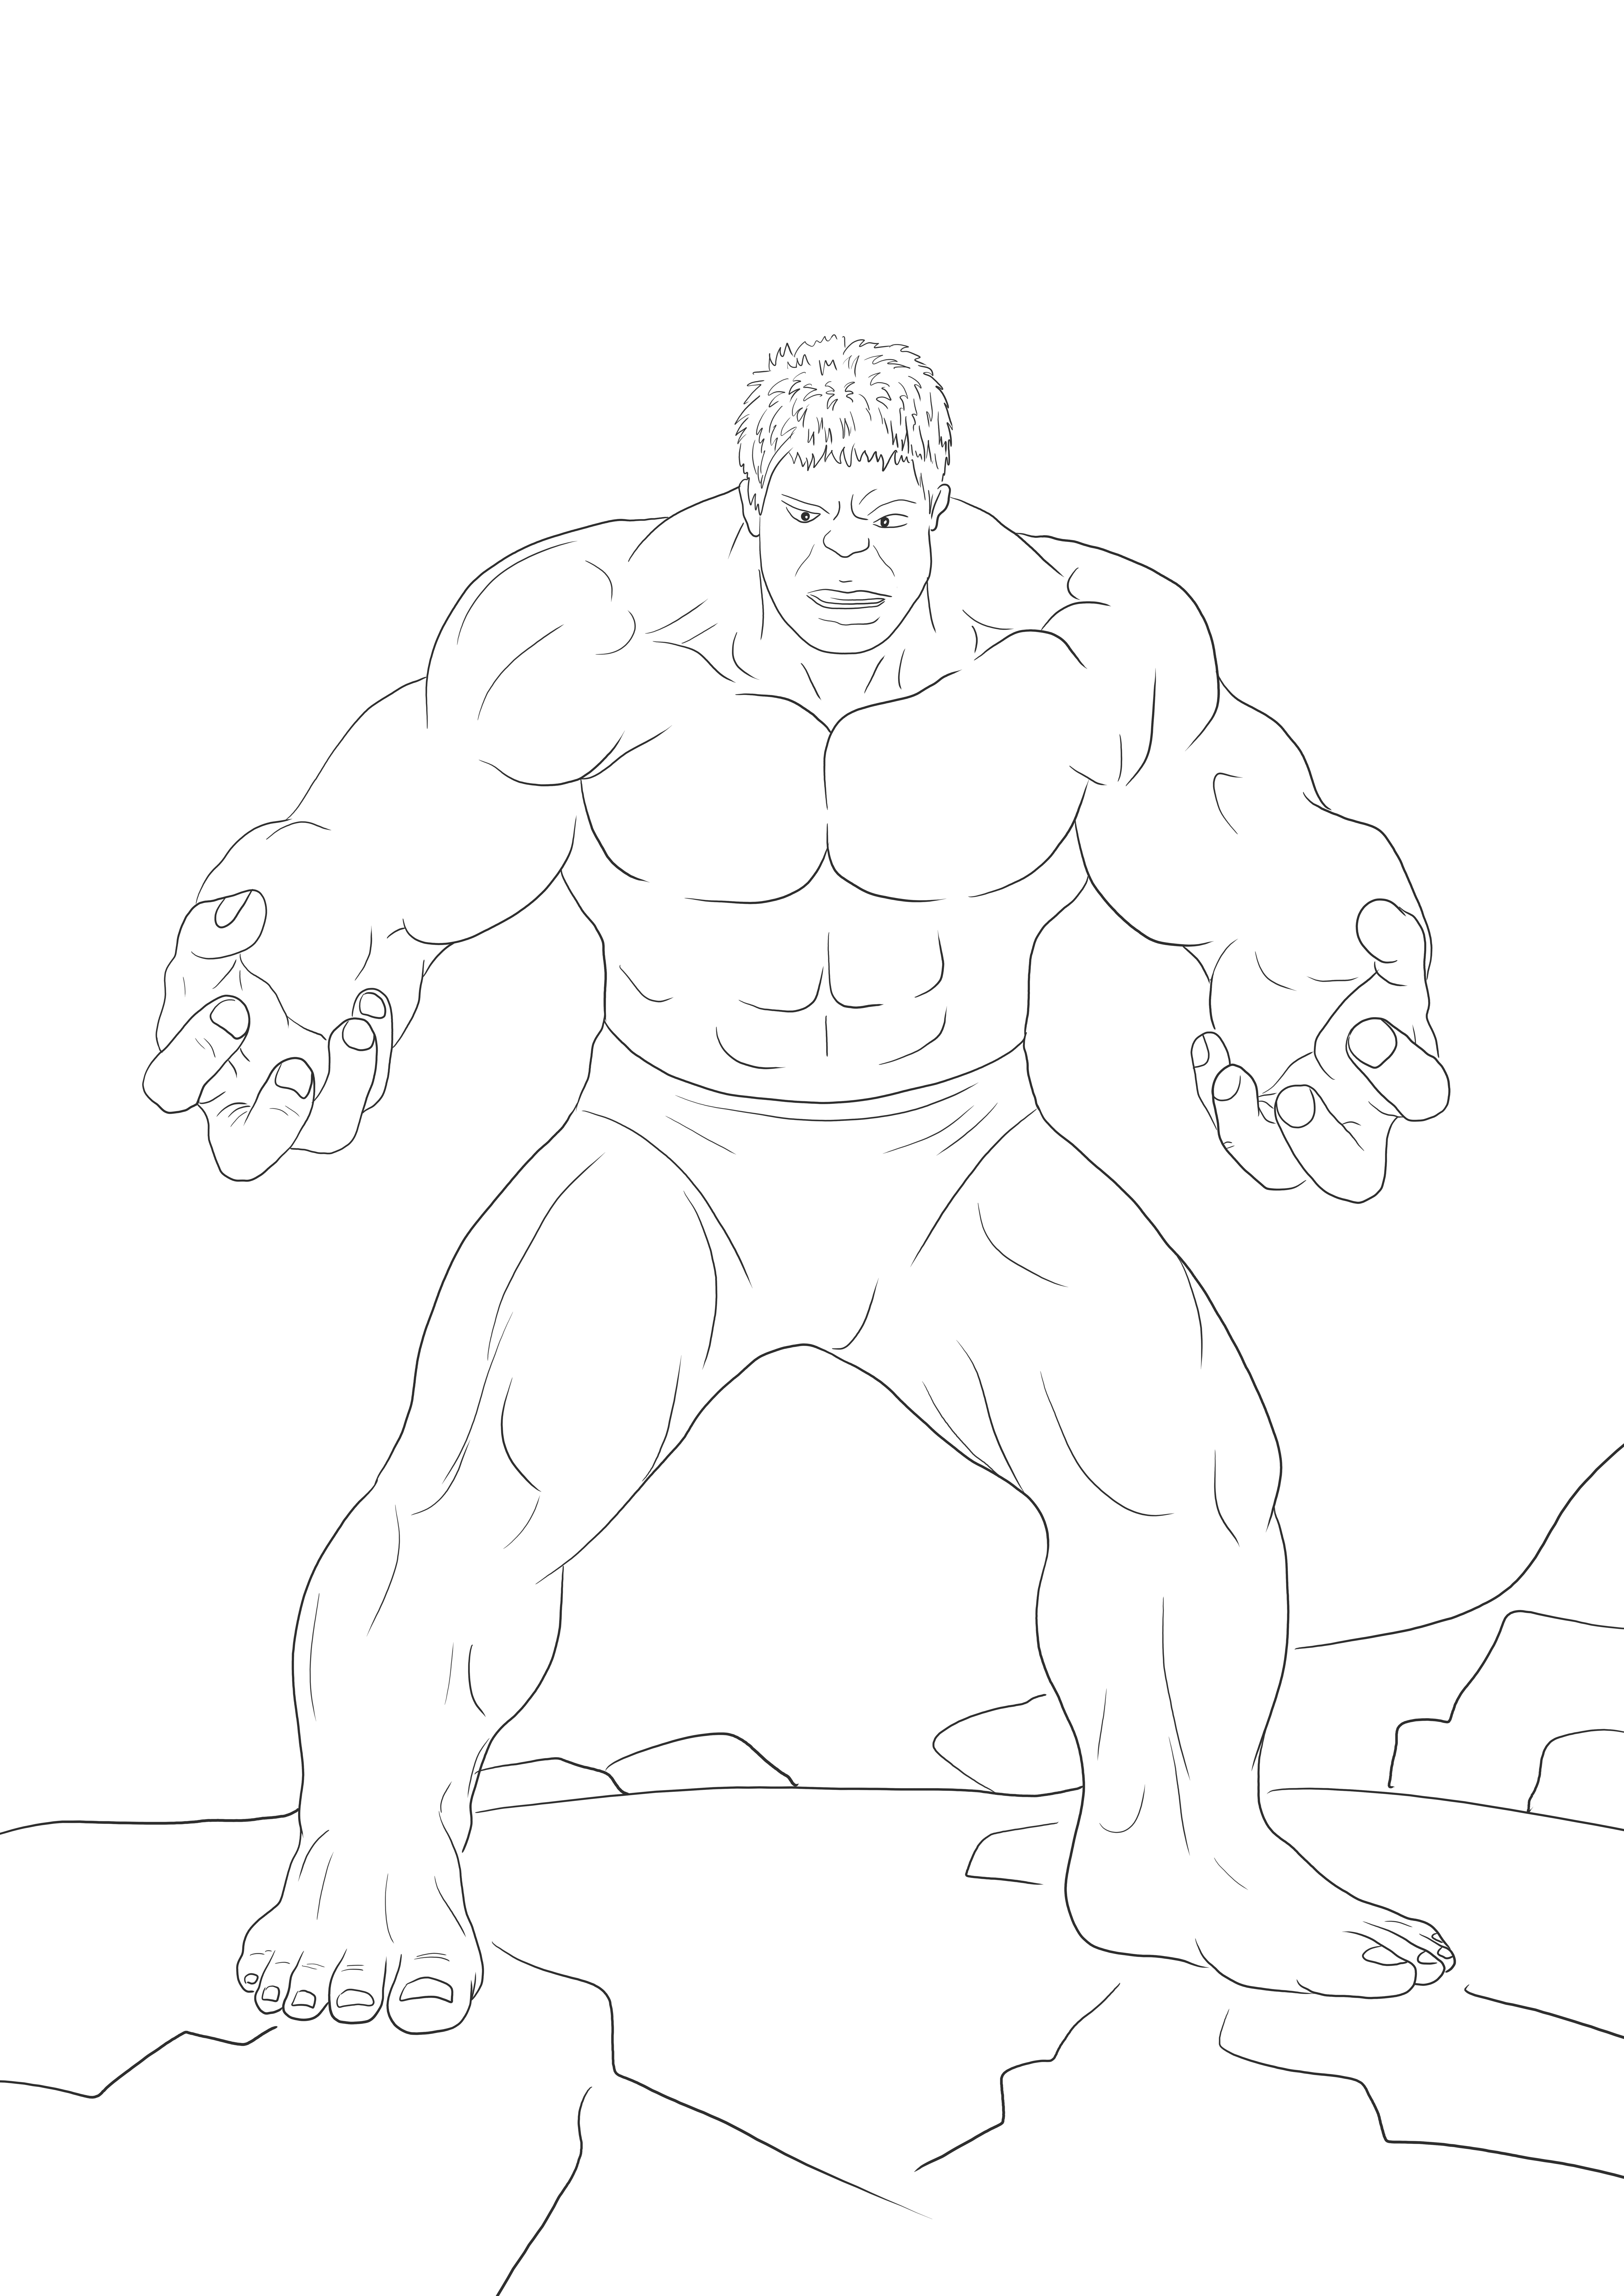 Imprimible gratis de Hulk enojado para colorear para enseñar sobre los héroes de Marvel